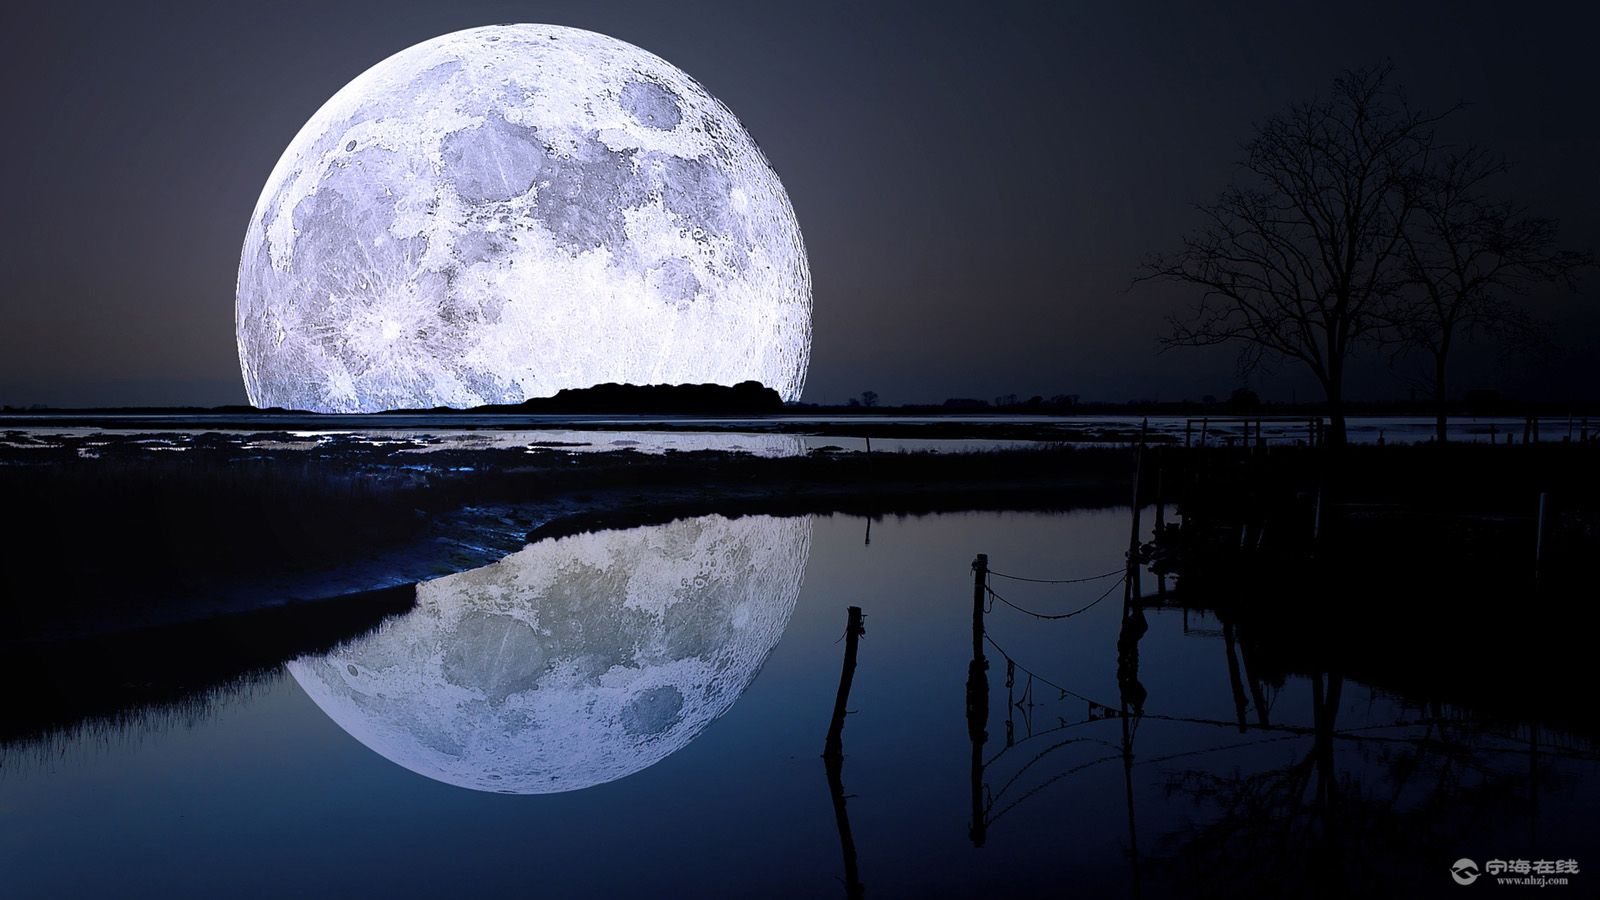 天文专家介绍,今年的中秋月不是"十五的月亮十六圆",而是"十七圆",最